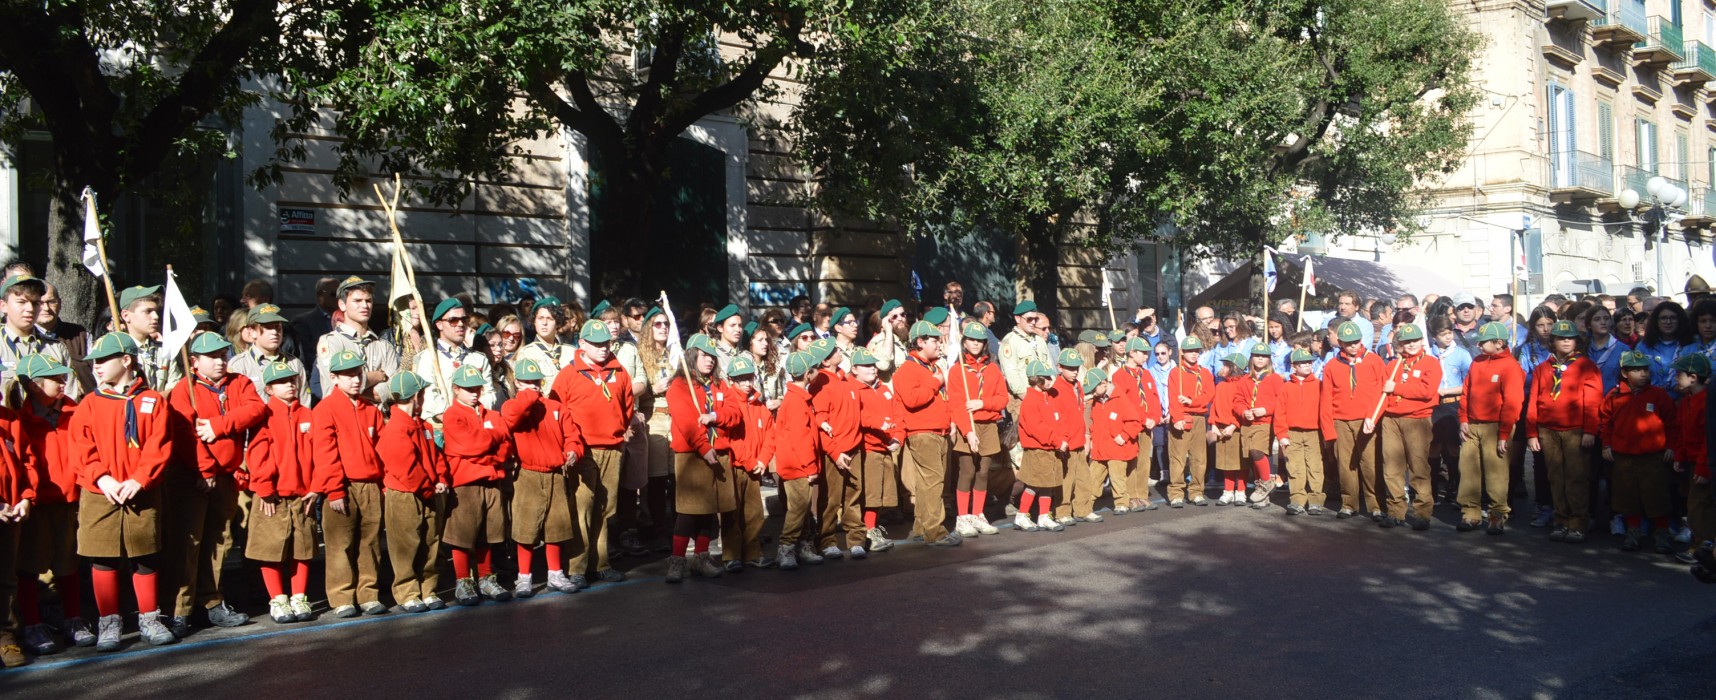 Gli scout di Bisceglie festeggiano i loro 50 anni di attività, svelato il monumento commemorativo /VIDEO